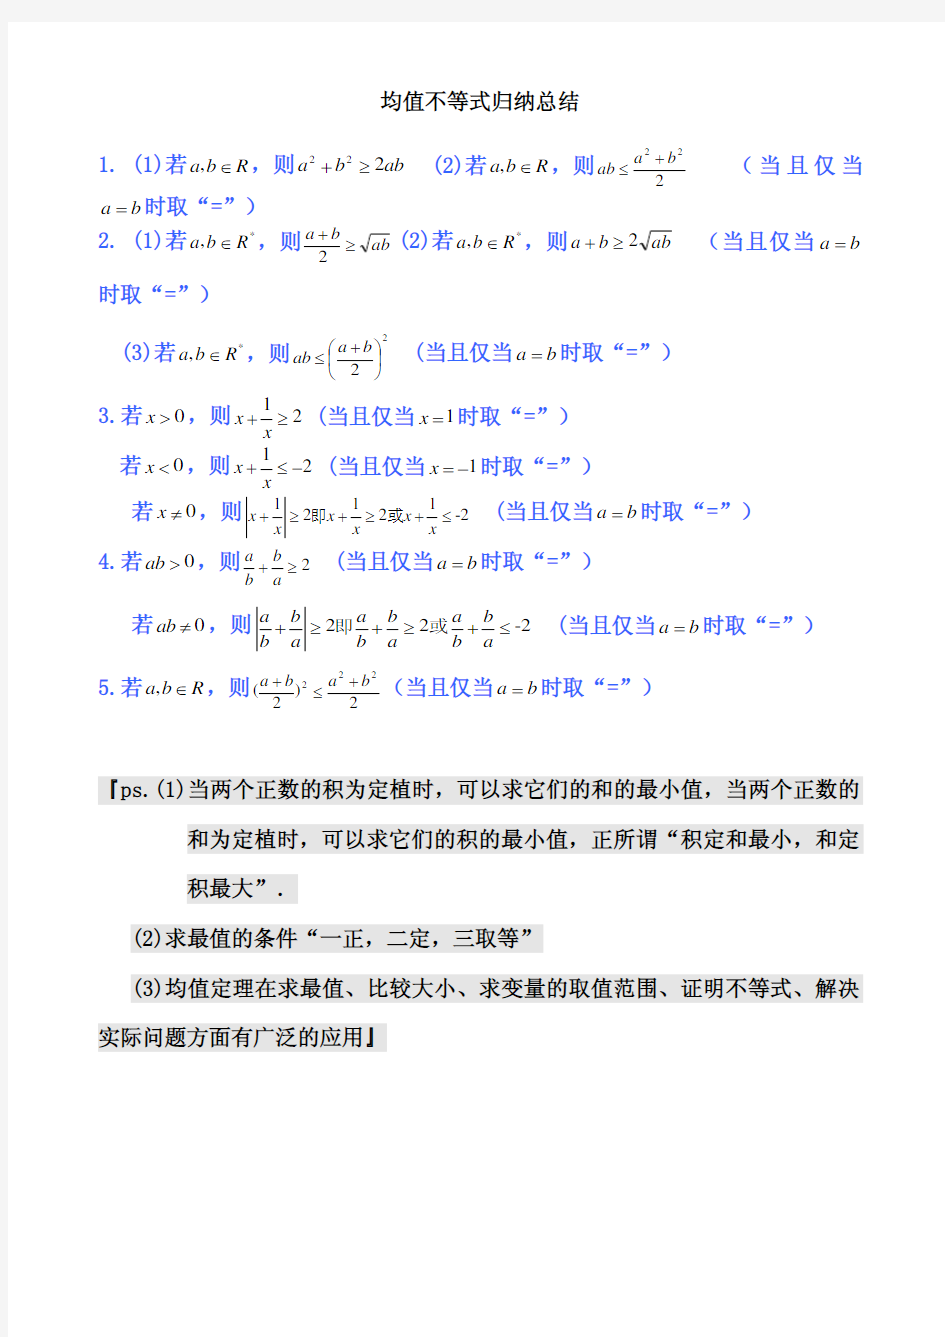 高中数学公式完全总结归纳(均值不等式)及常见题型